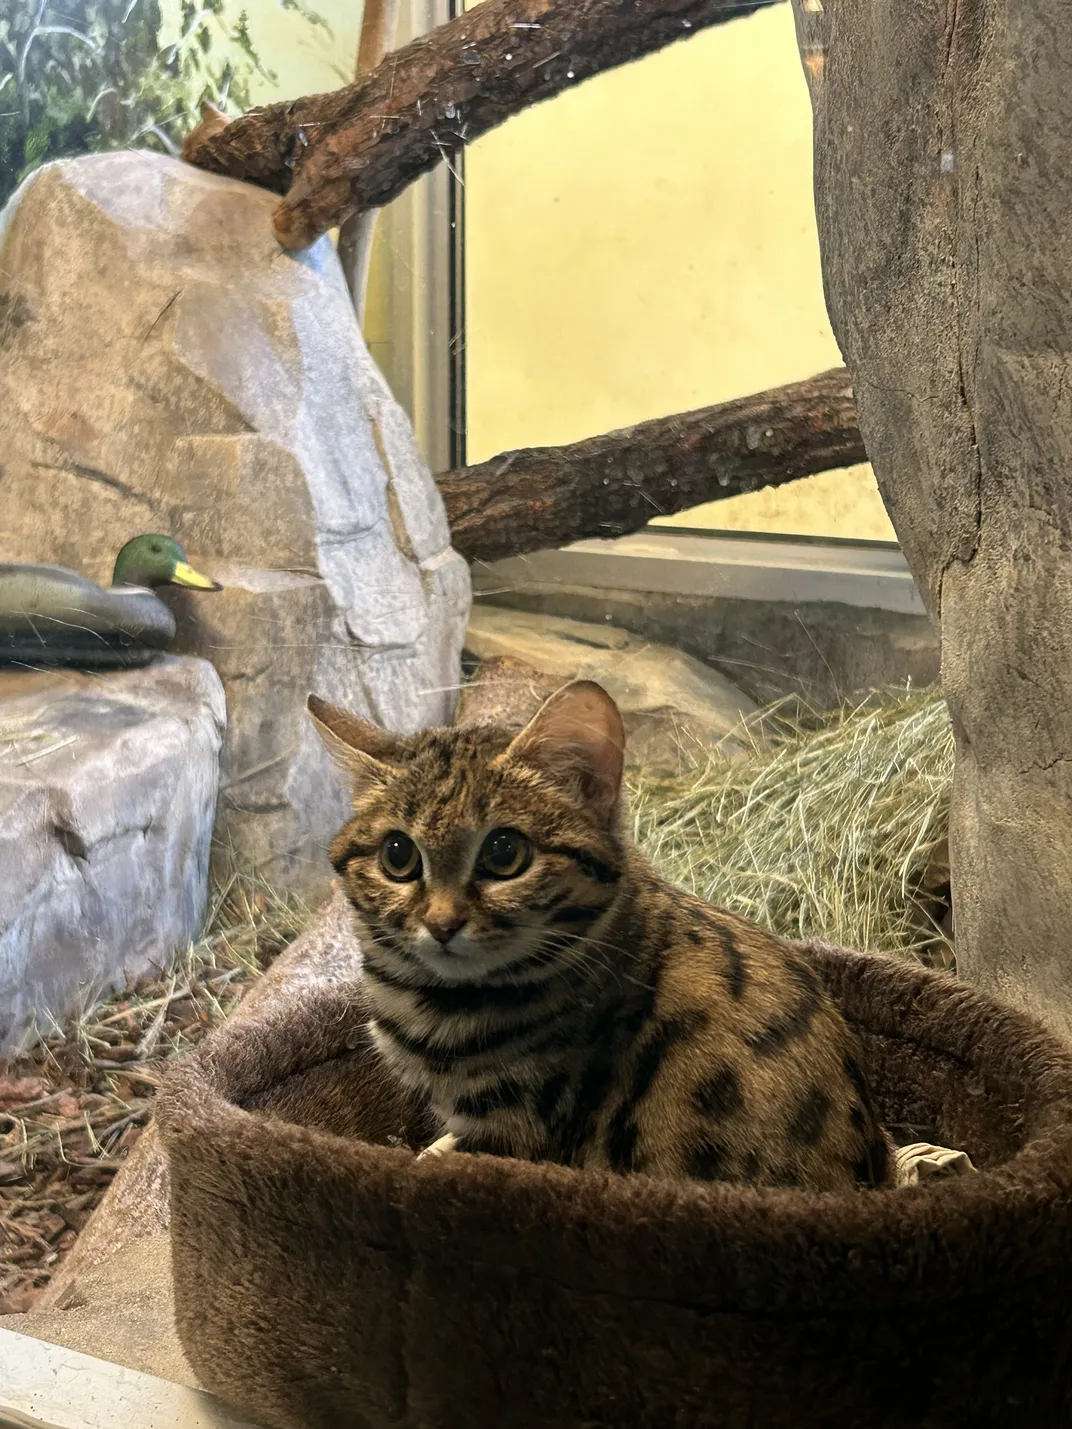 Small cute cat in zoo enclosure